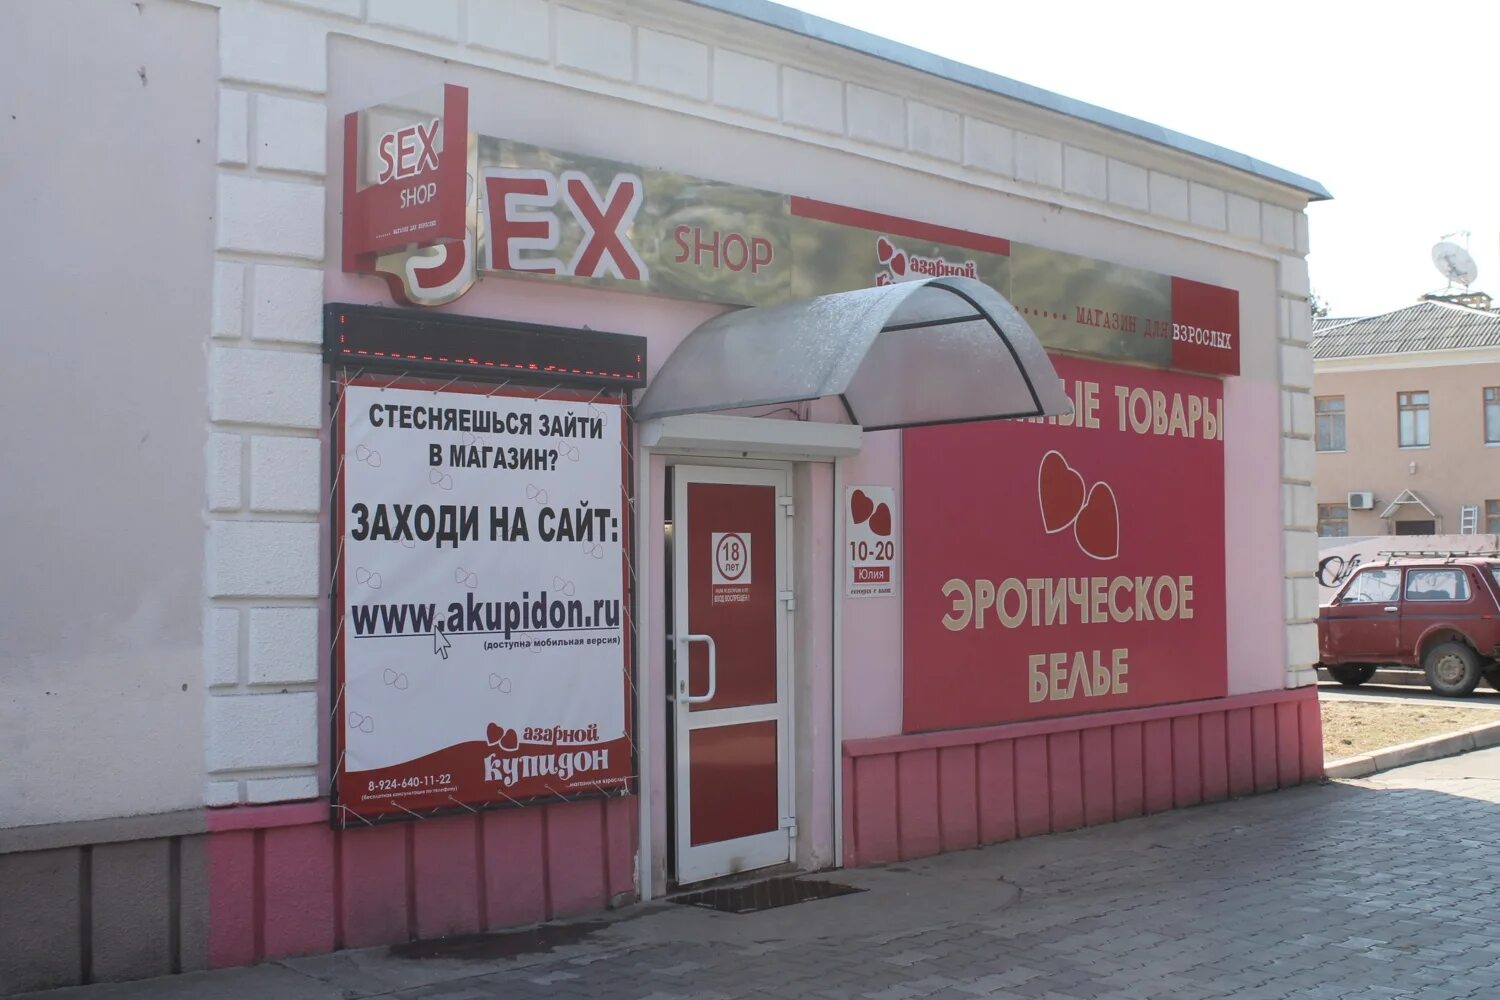 Магазин заходи. Зайти в магазин. Магазин заходи Новочеркасск. Режим работы магазина заходи. Магазин заходи в Омске адреса.